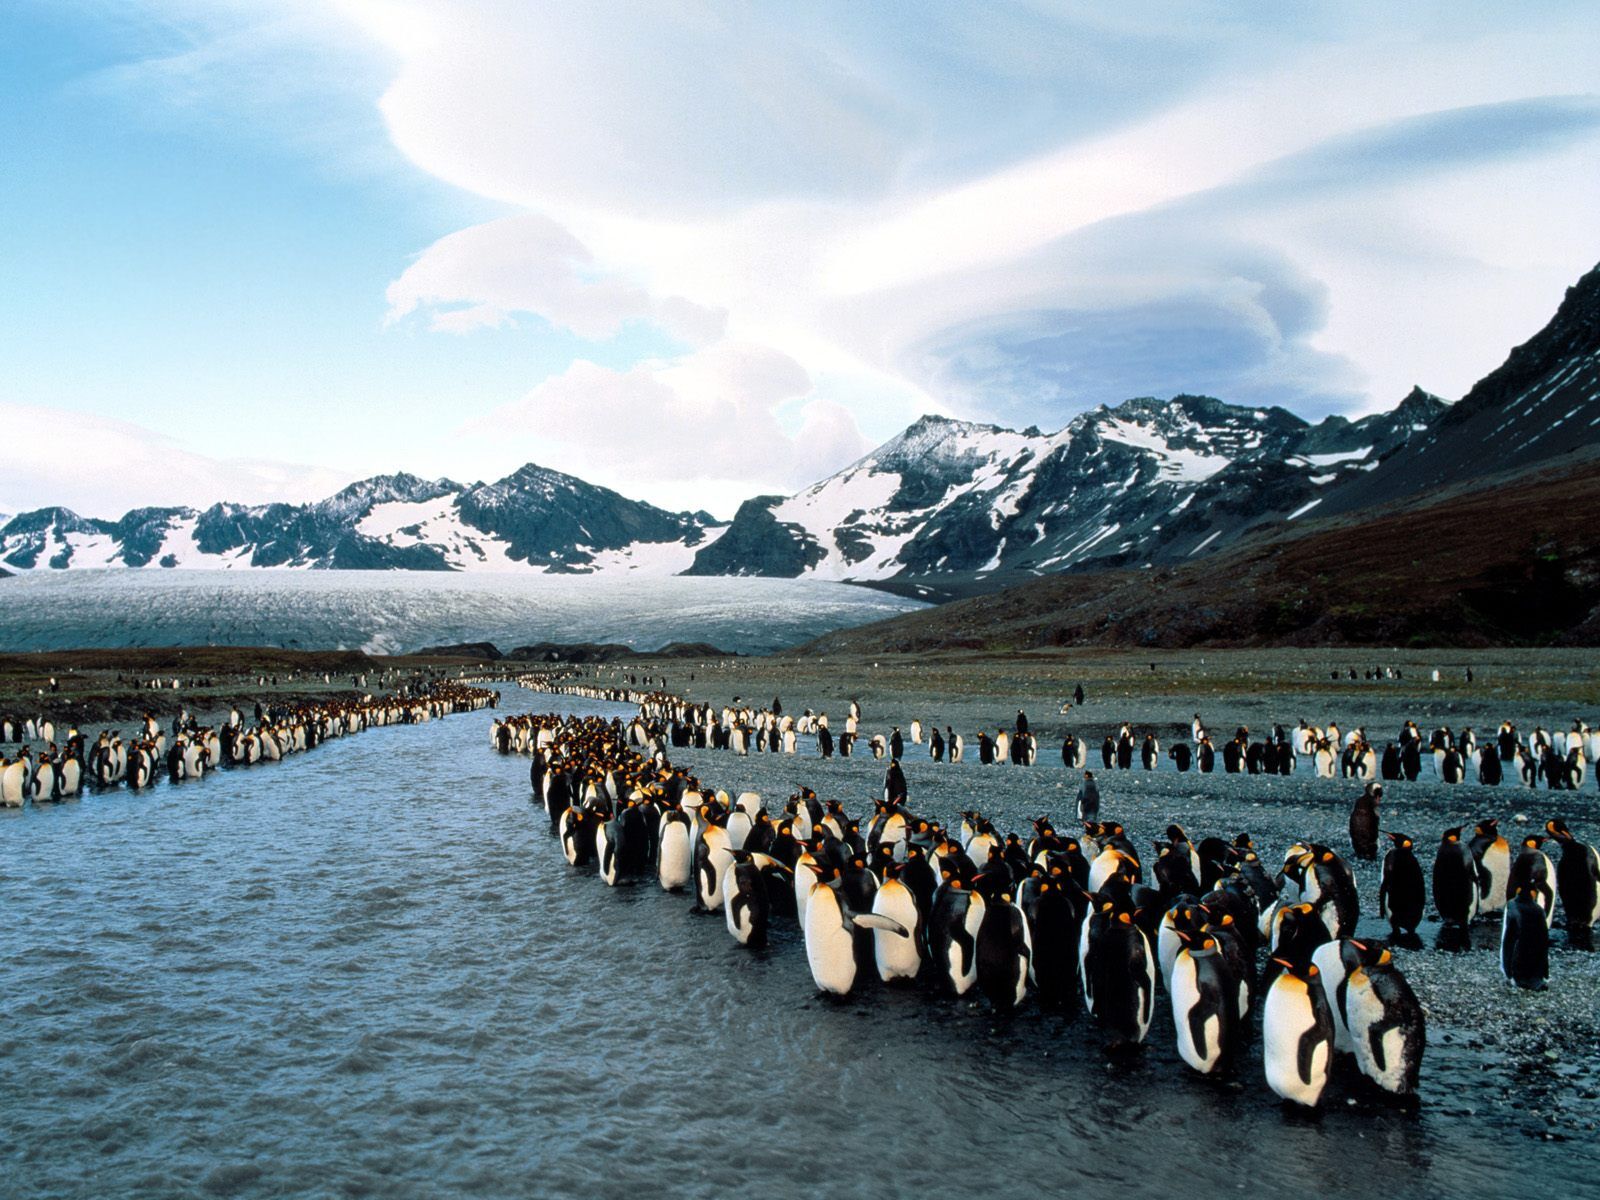 Трогательная подборка фото пингвинов